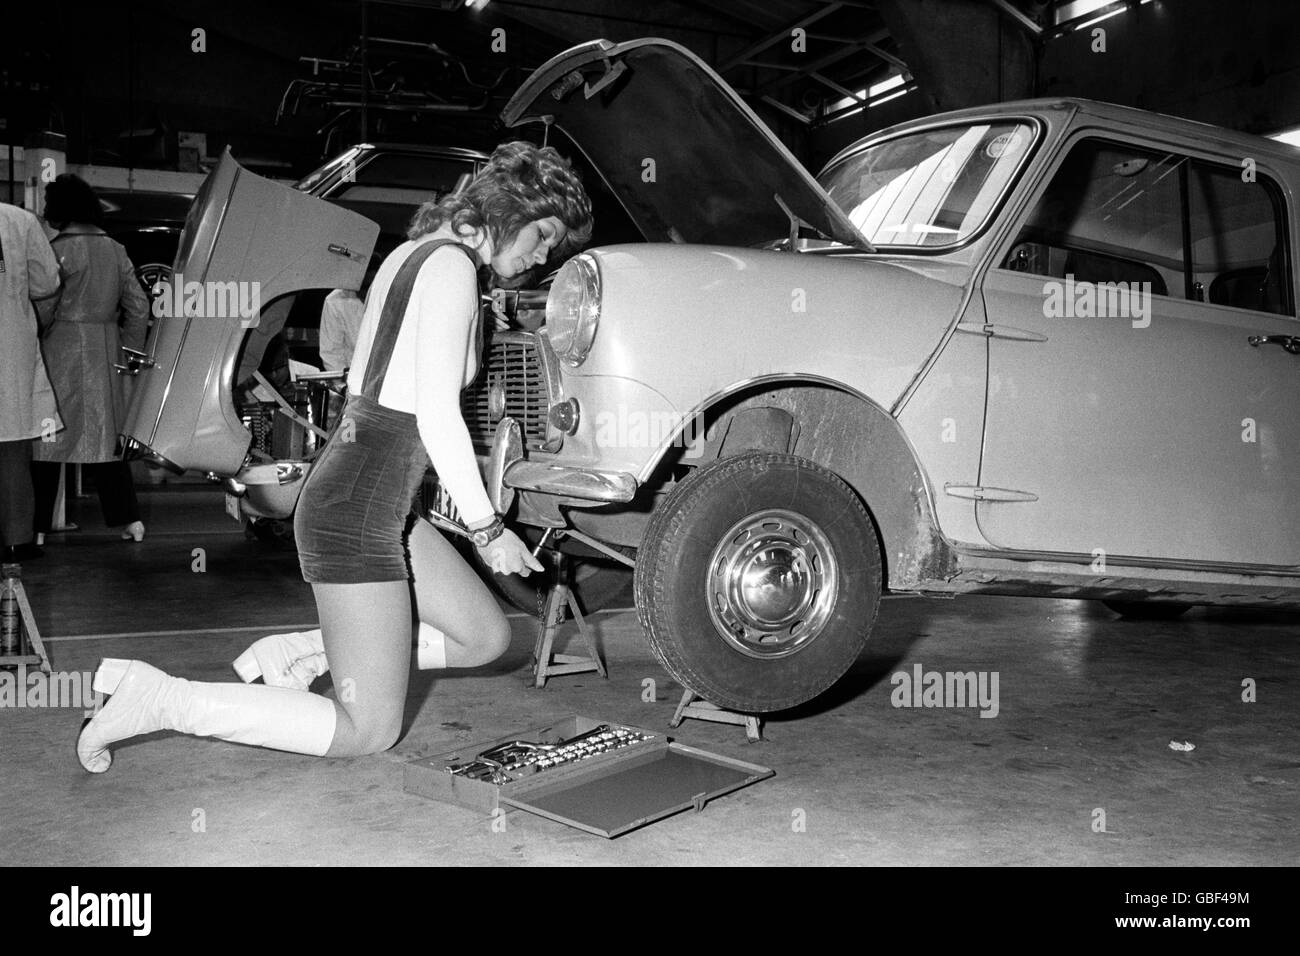 Work - DIY Car Repair - 1971 Stock Photo